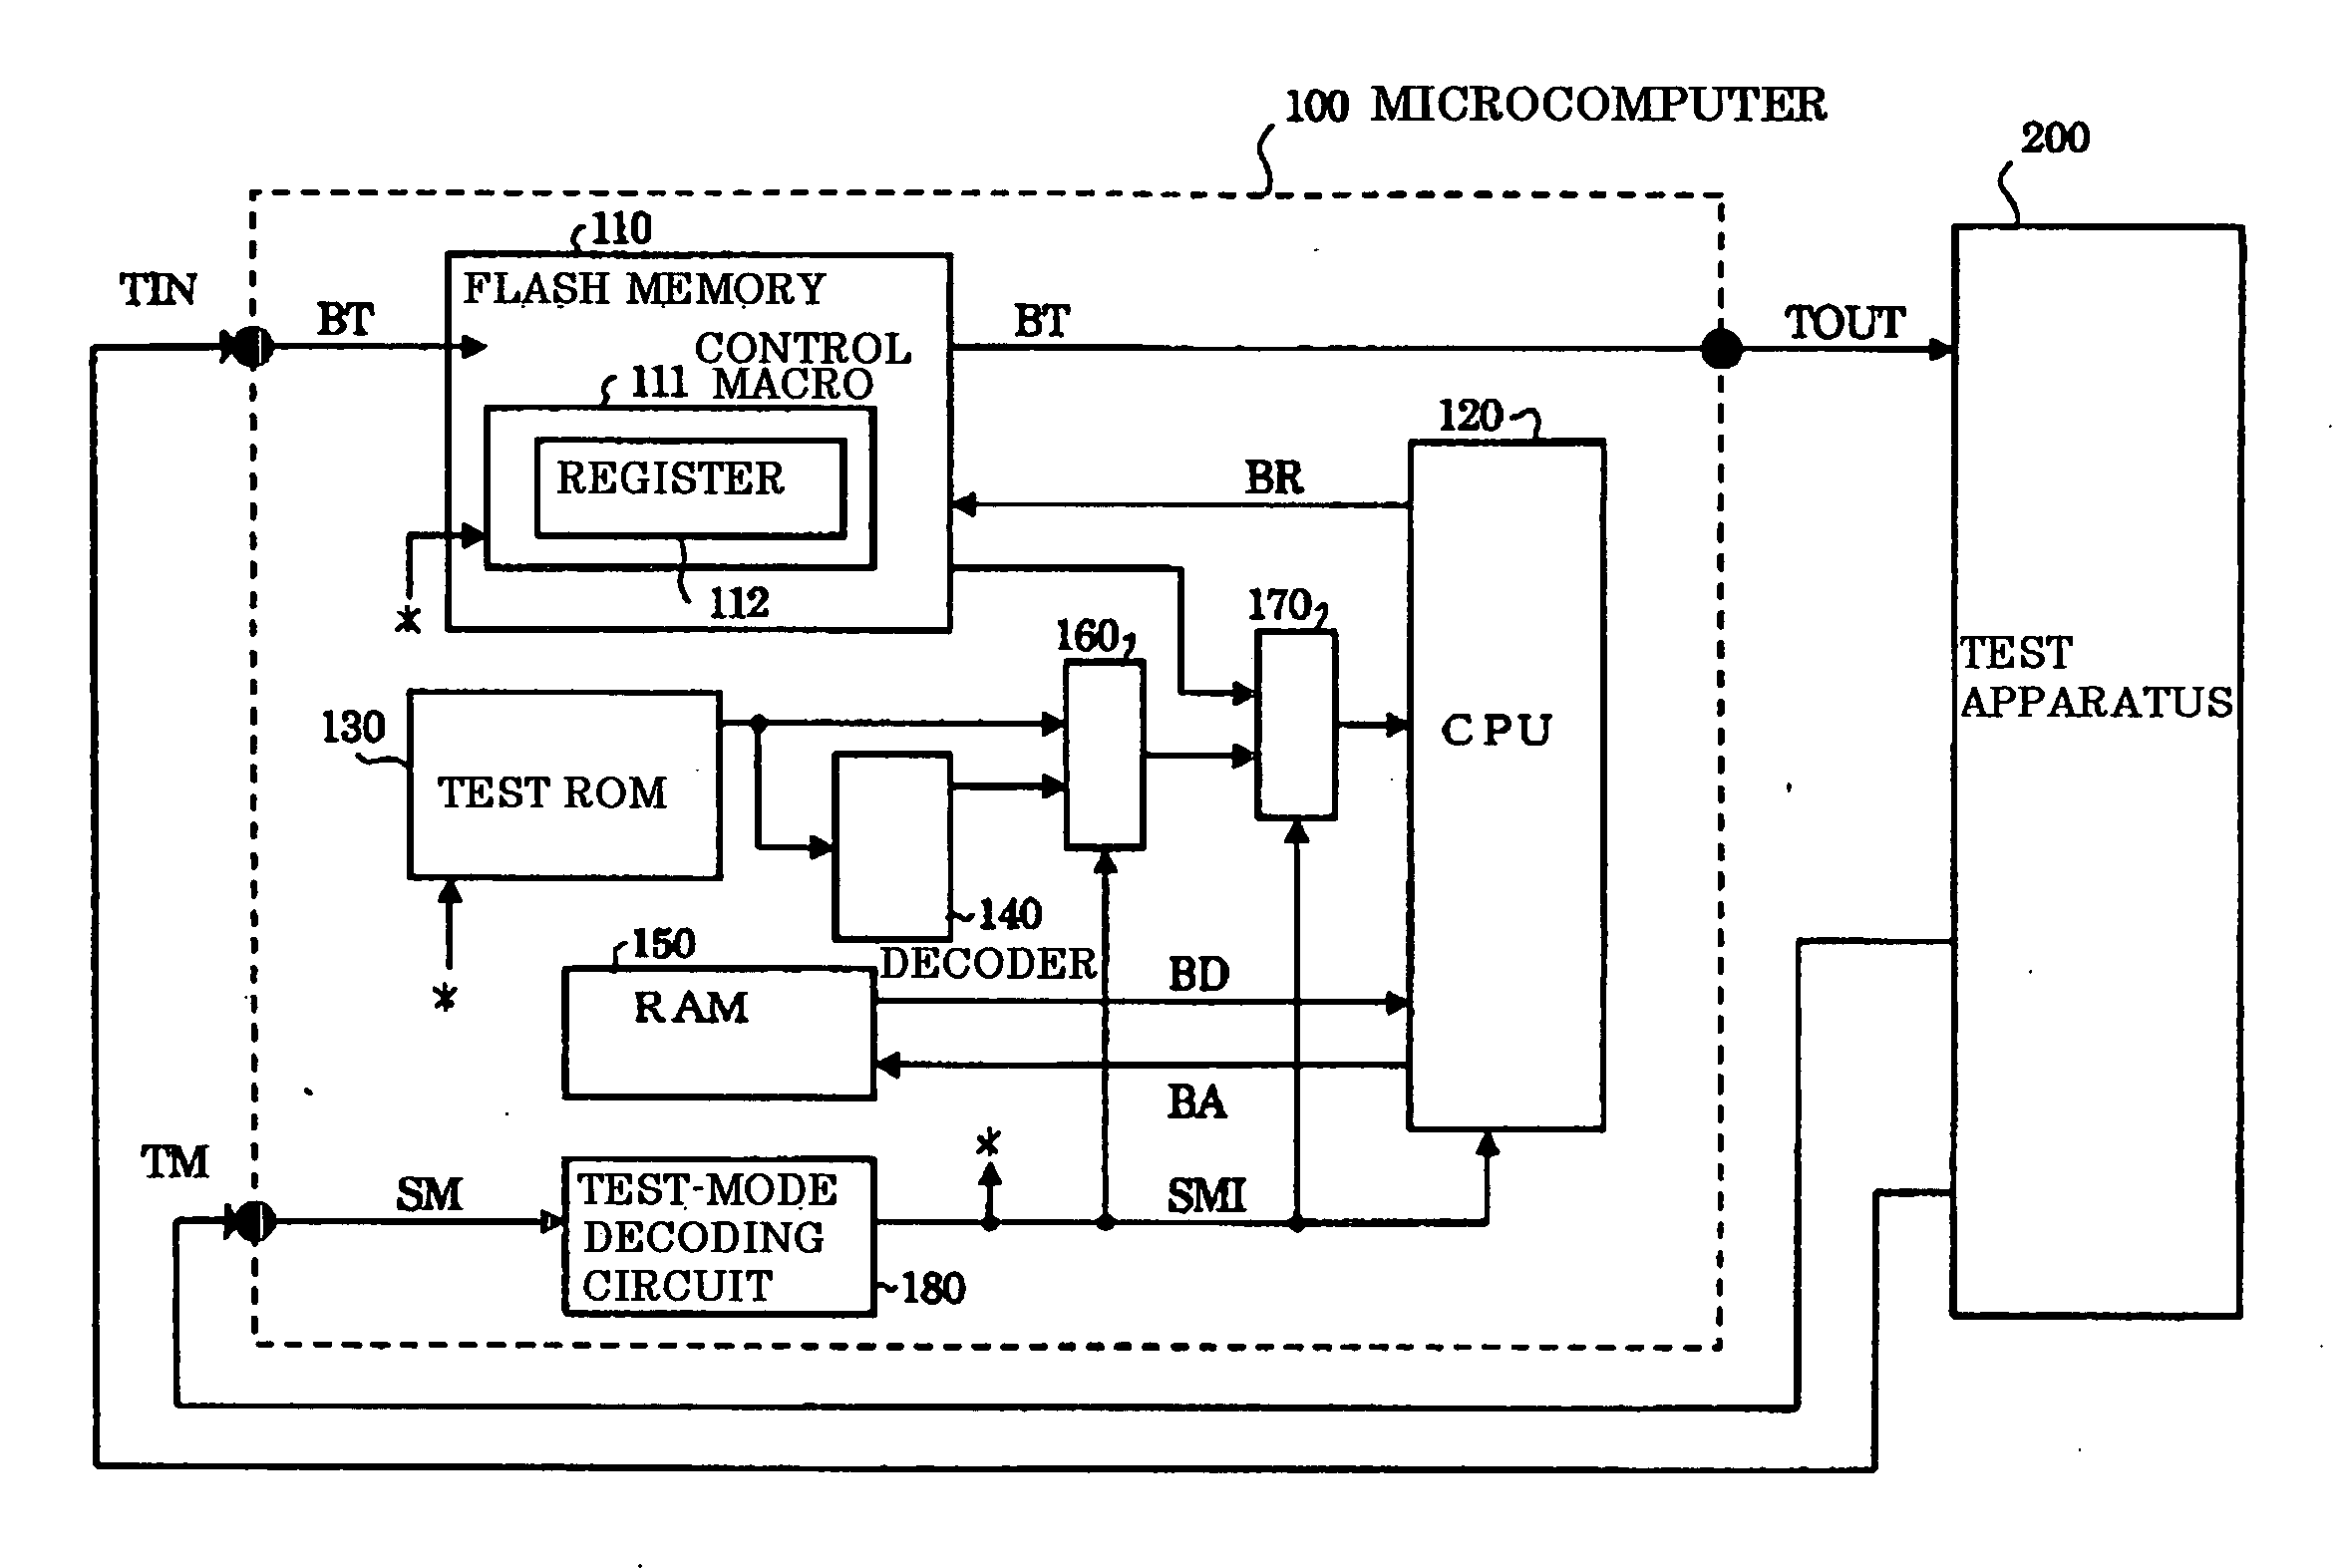 Microcomputer and method of testing same